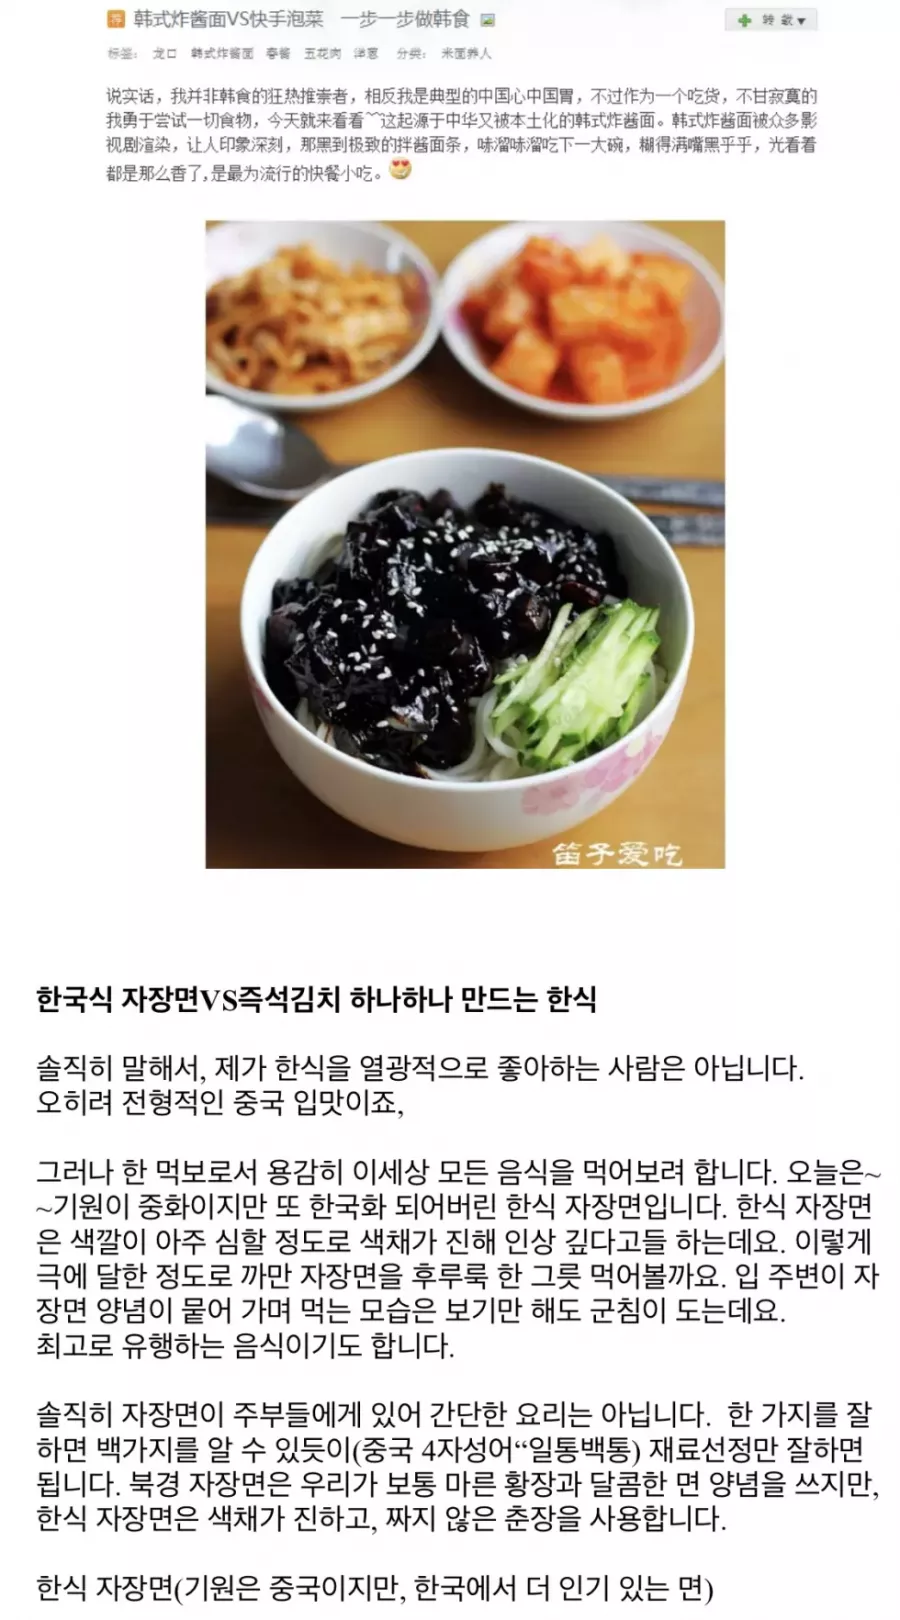 중국사이트에 한국음식 소개하는 중국인 -cboard